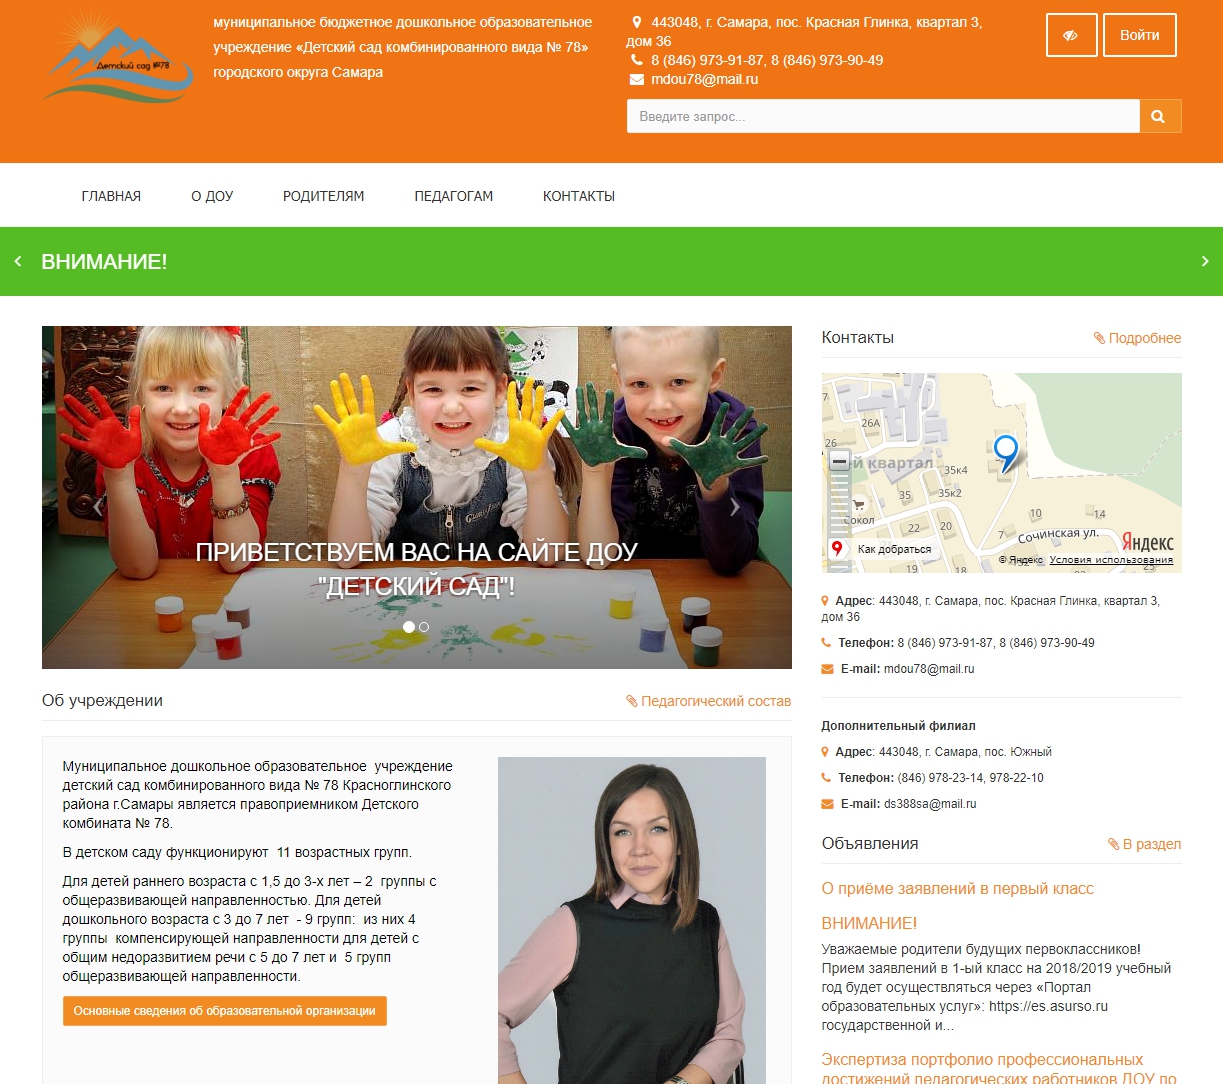 Сайт самарских детских садов. МБДОУ детский сад 78.